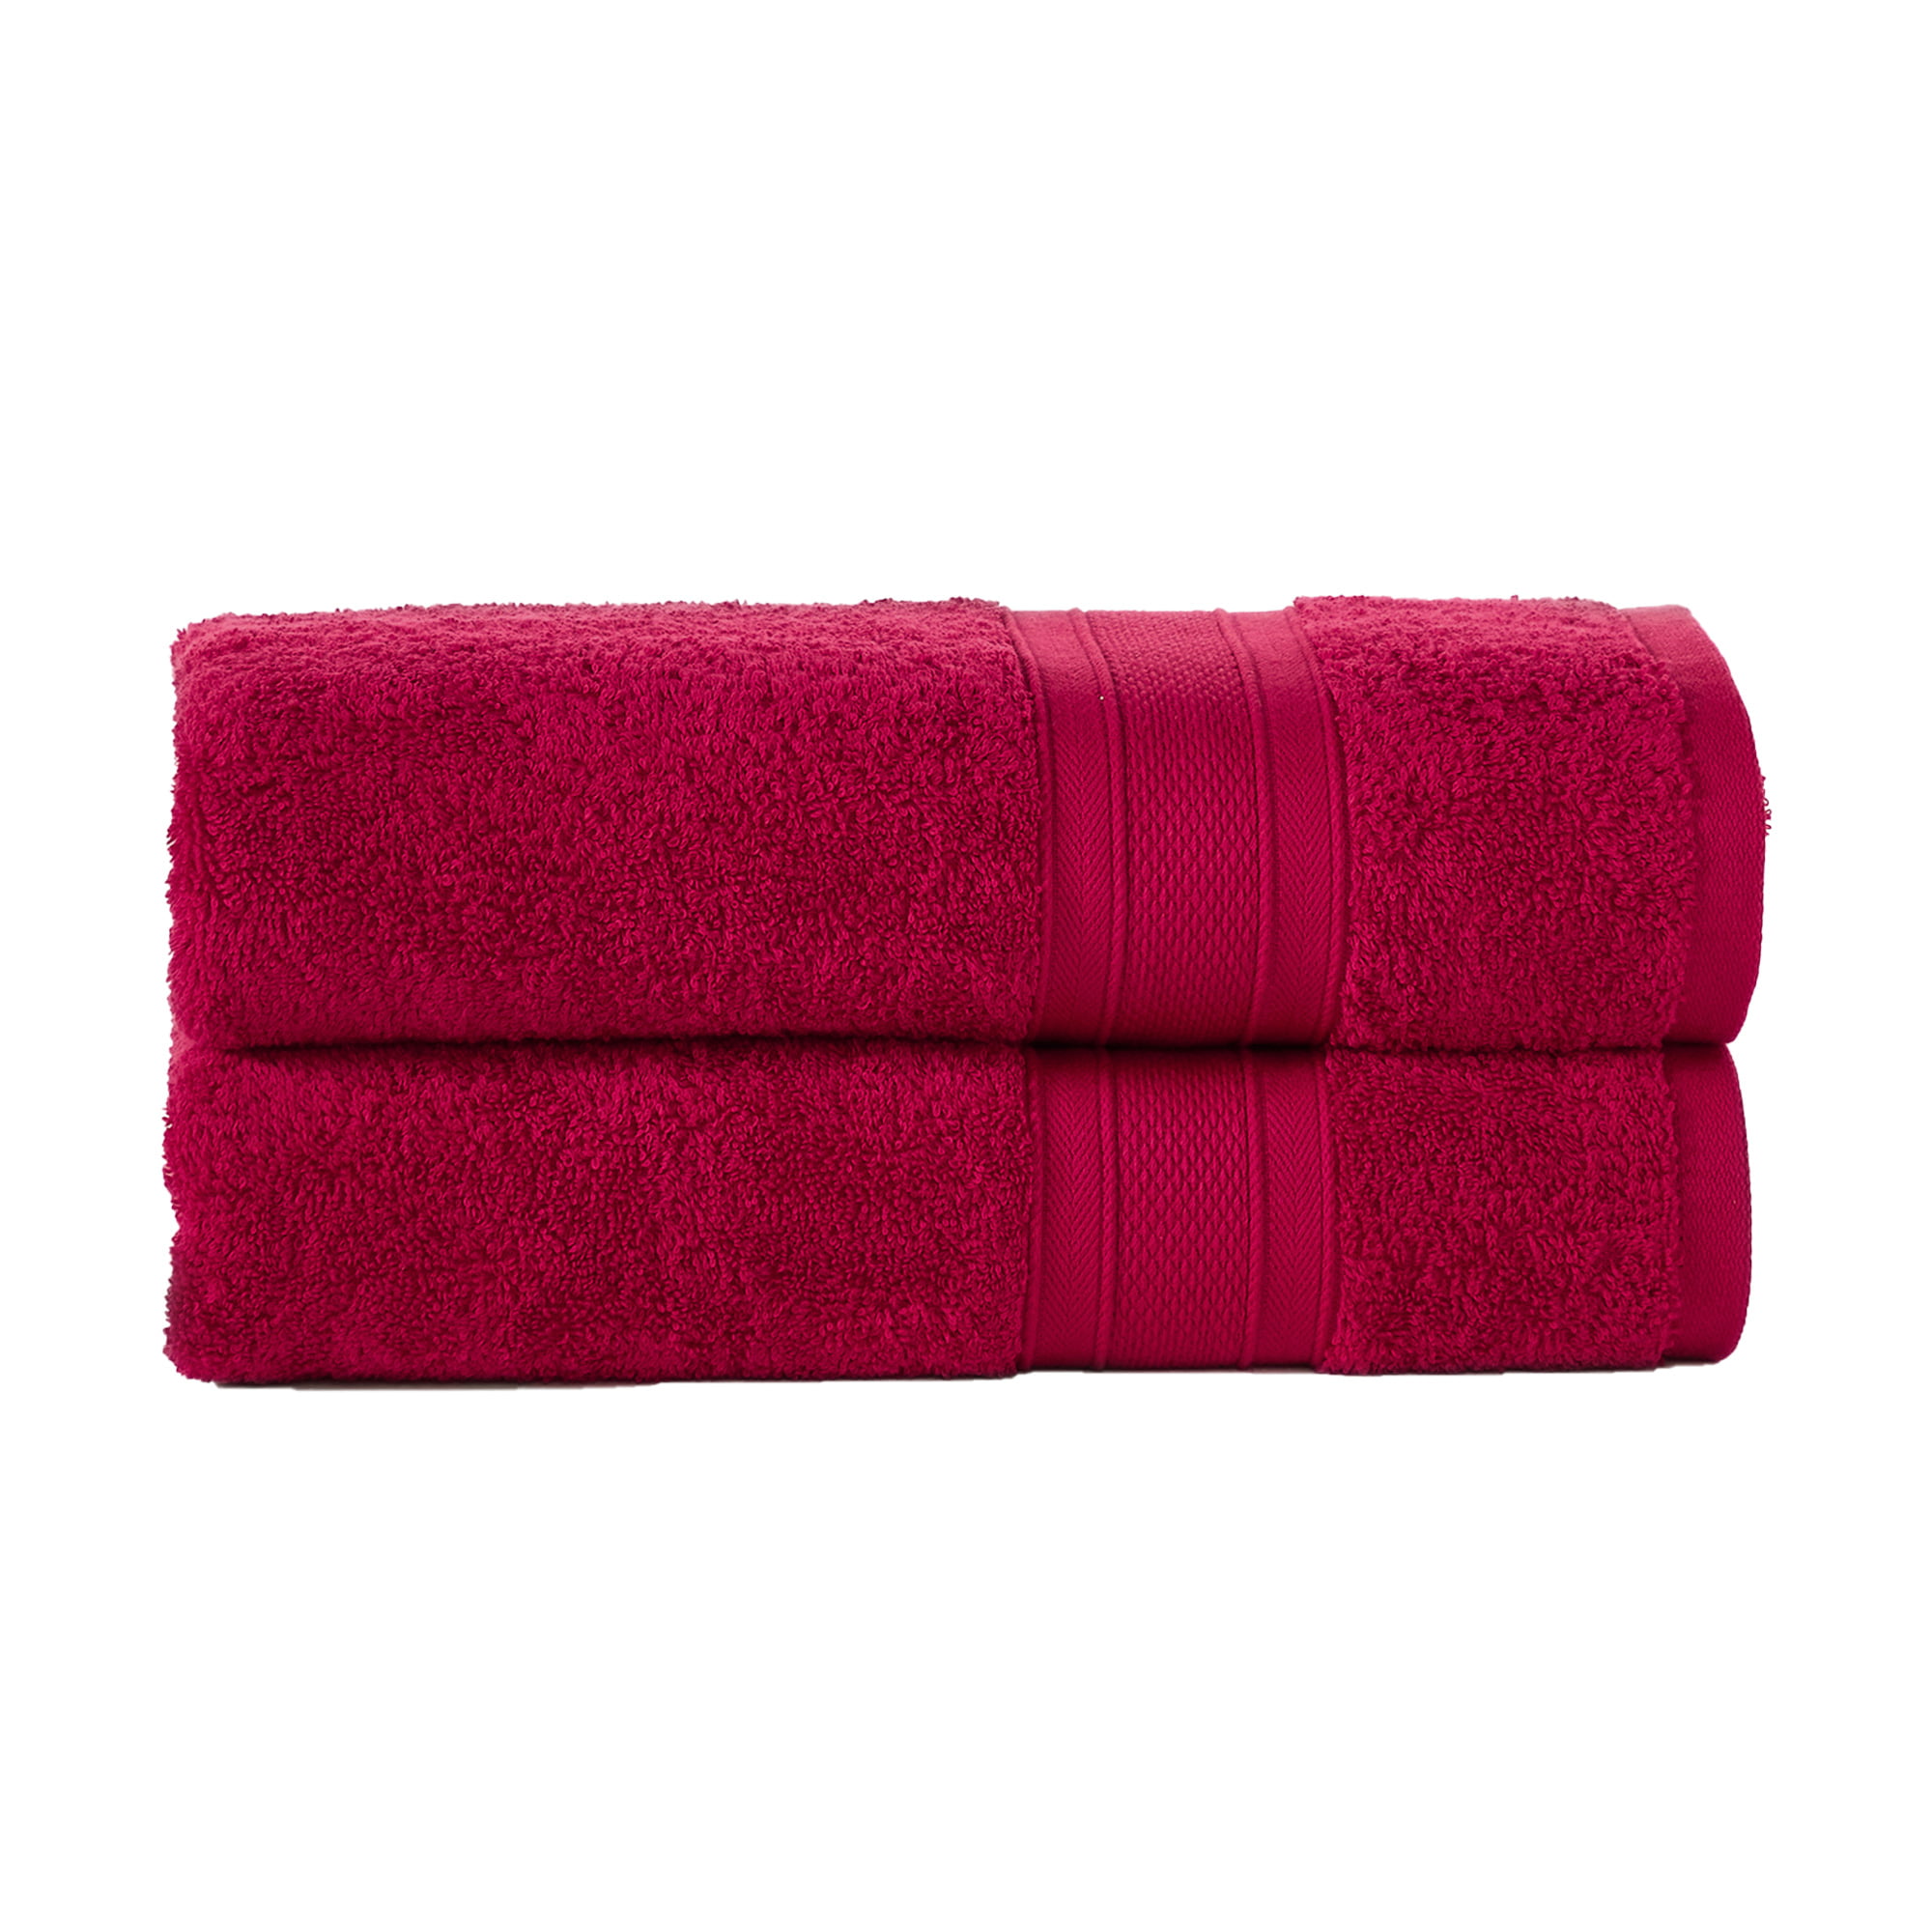 Trident Soft N Plush, 6 Piece Washcloths/Hand/Bath Towels, Silver 